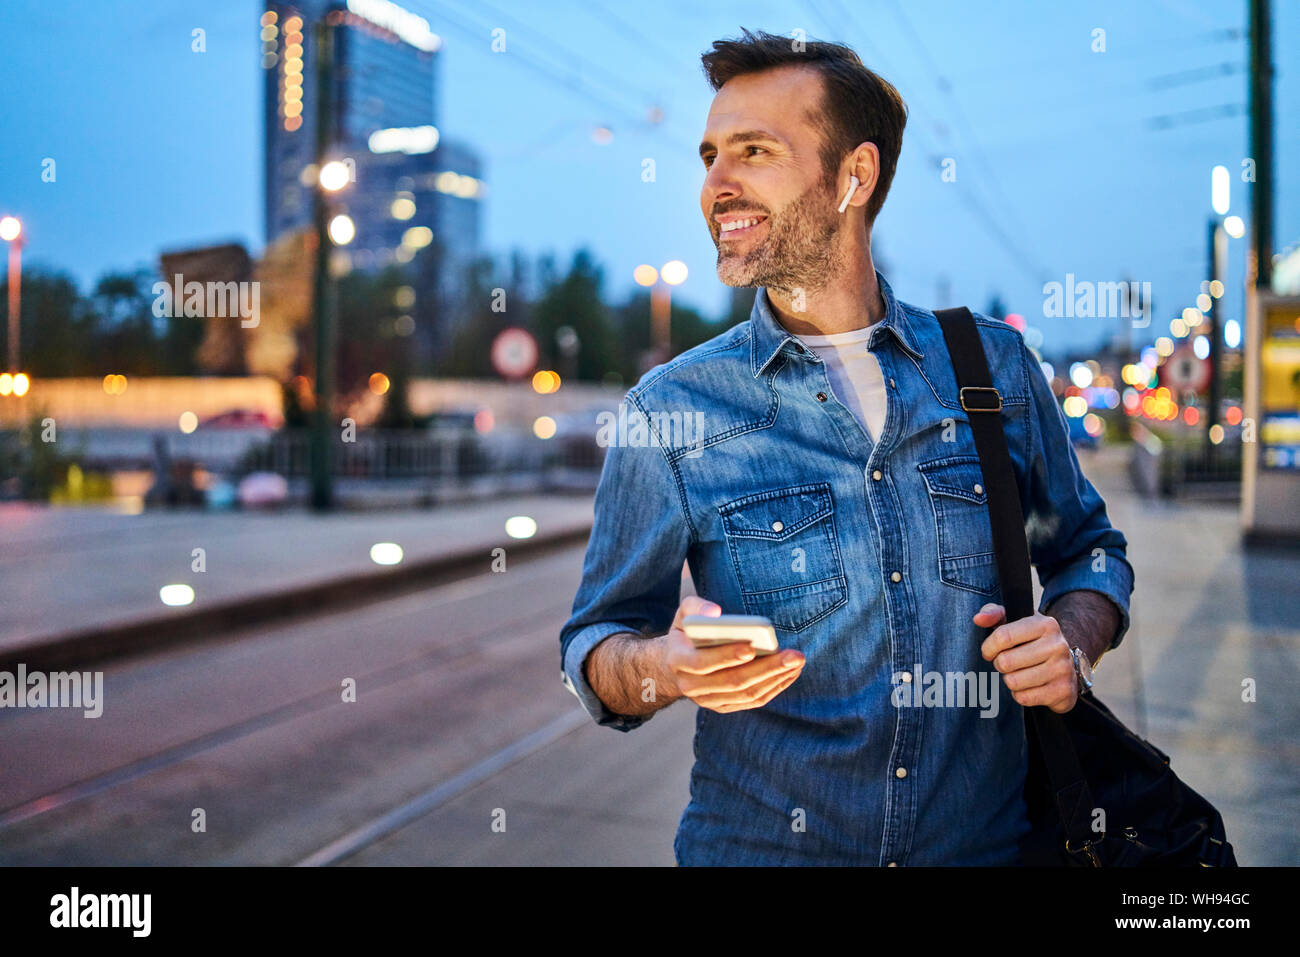 Hombre sonriendo con smartphone y escuchar música a través de unos auriculares inalámbricos mientras esperan en la parada de tranvía de conmutar durante la noche después del trabajo Foto de stock